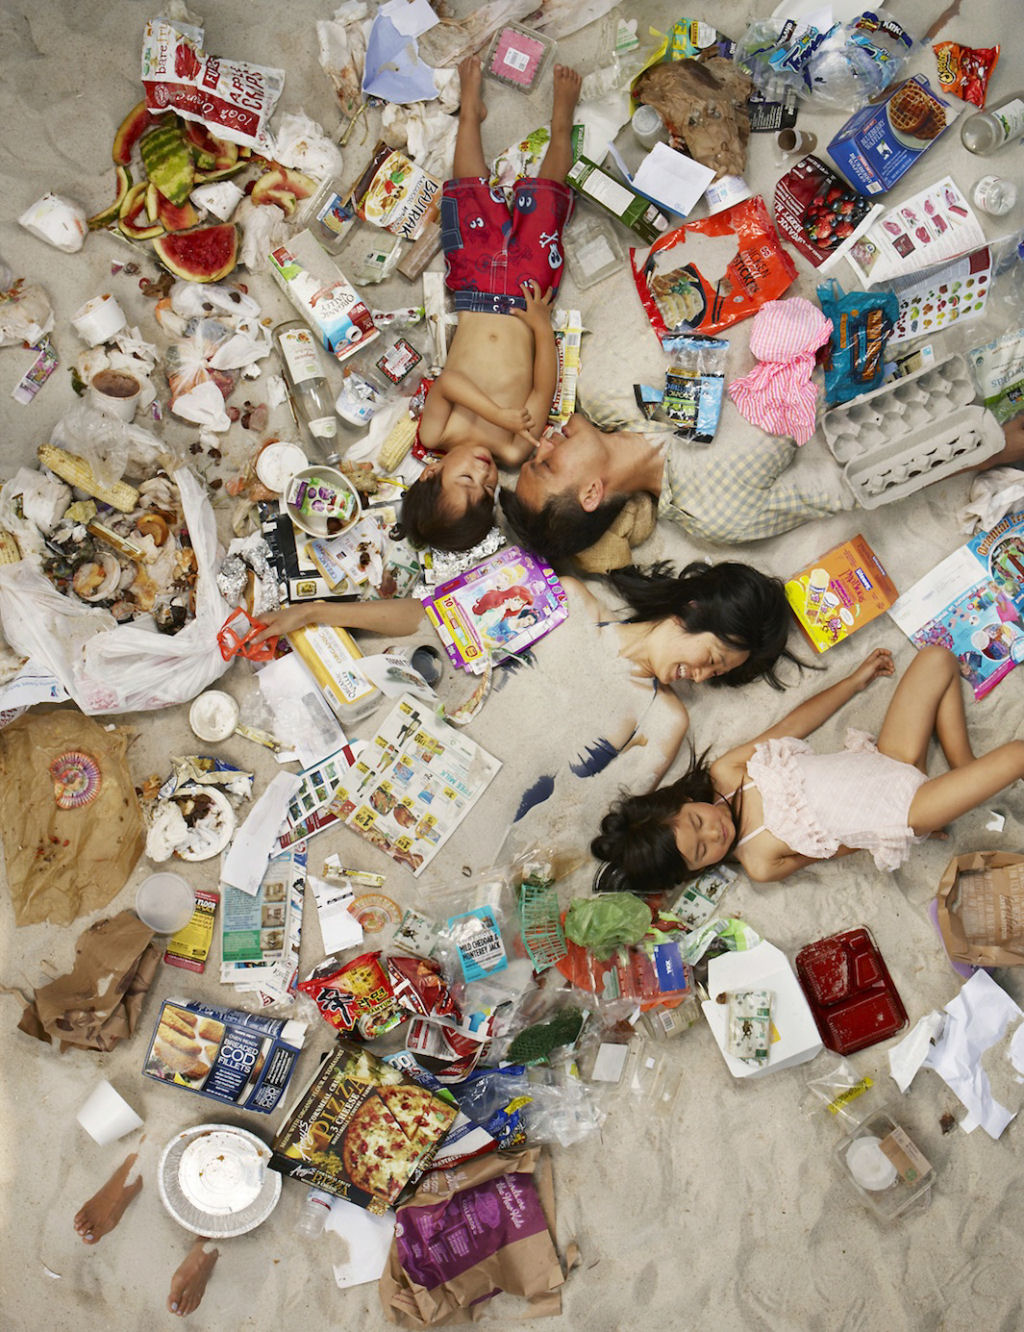 Srie mostra pessoas deitadas no seu lixo acumulado durante uma semana 06